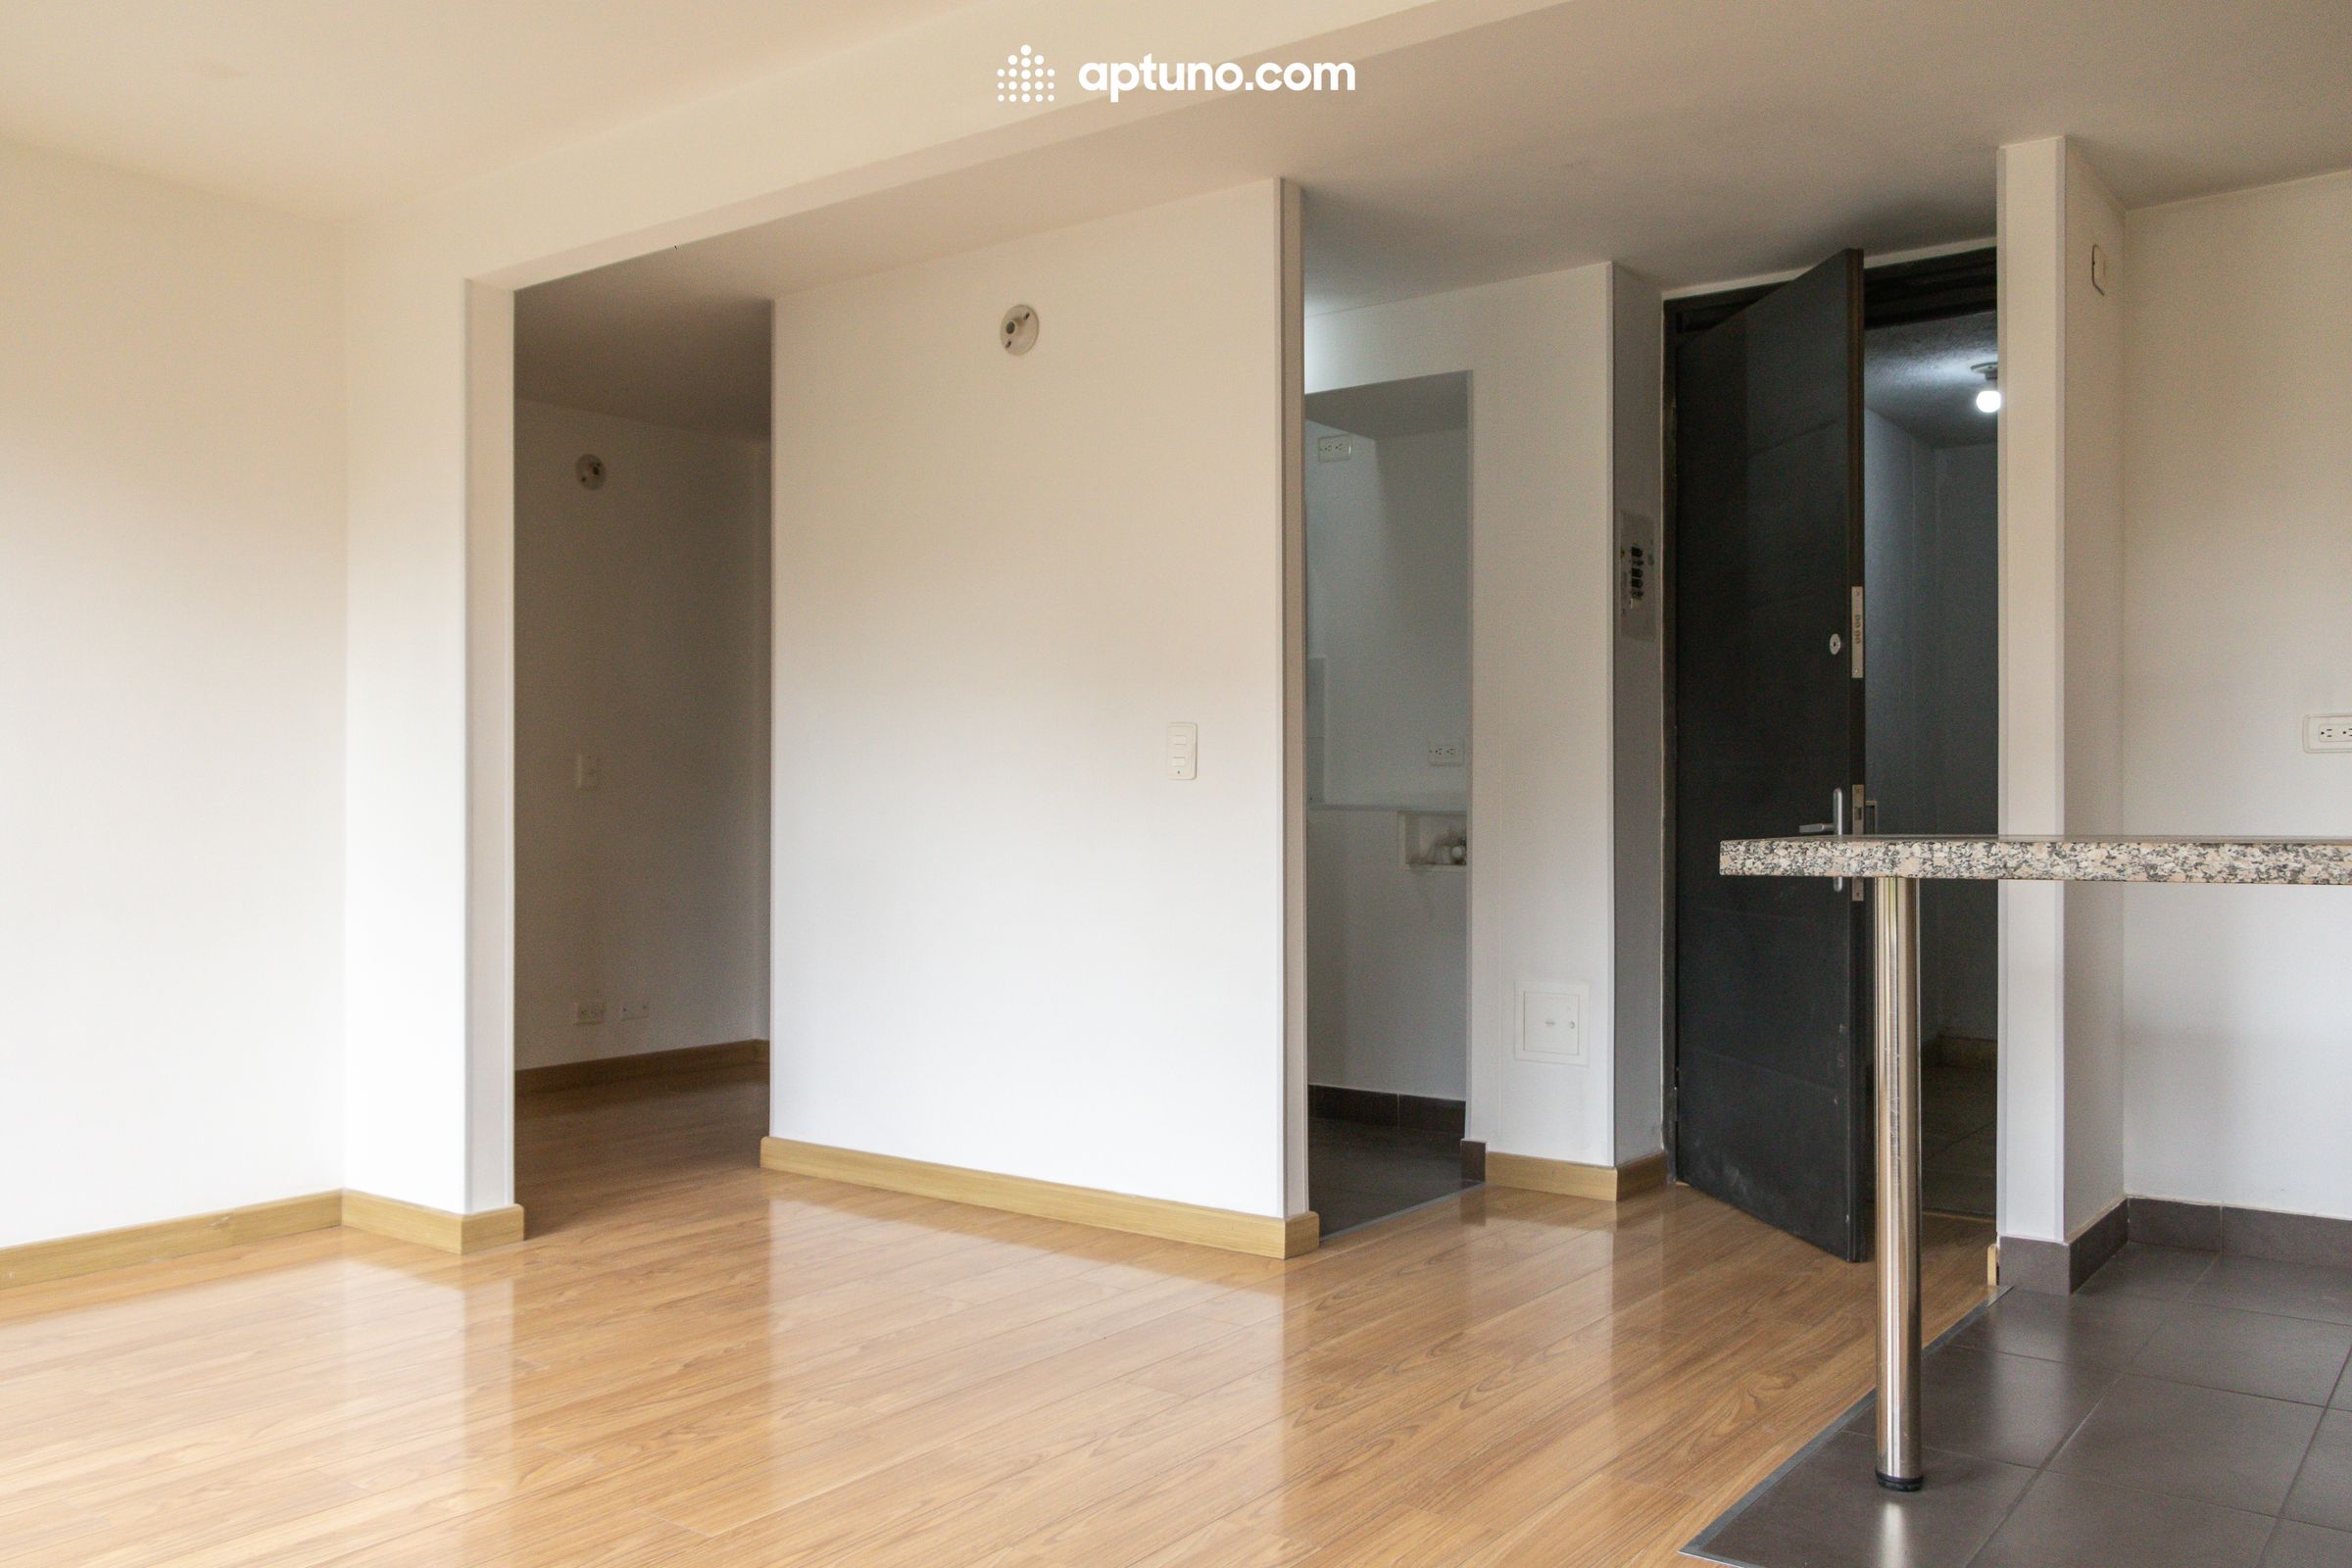 Apartamento en arriendo Madrid 61 m² - $ 1.200.000,00